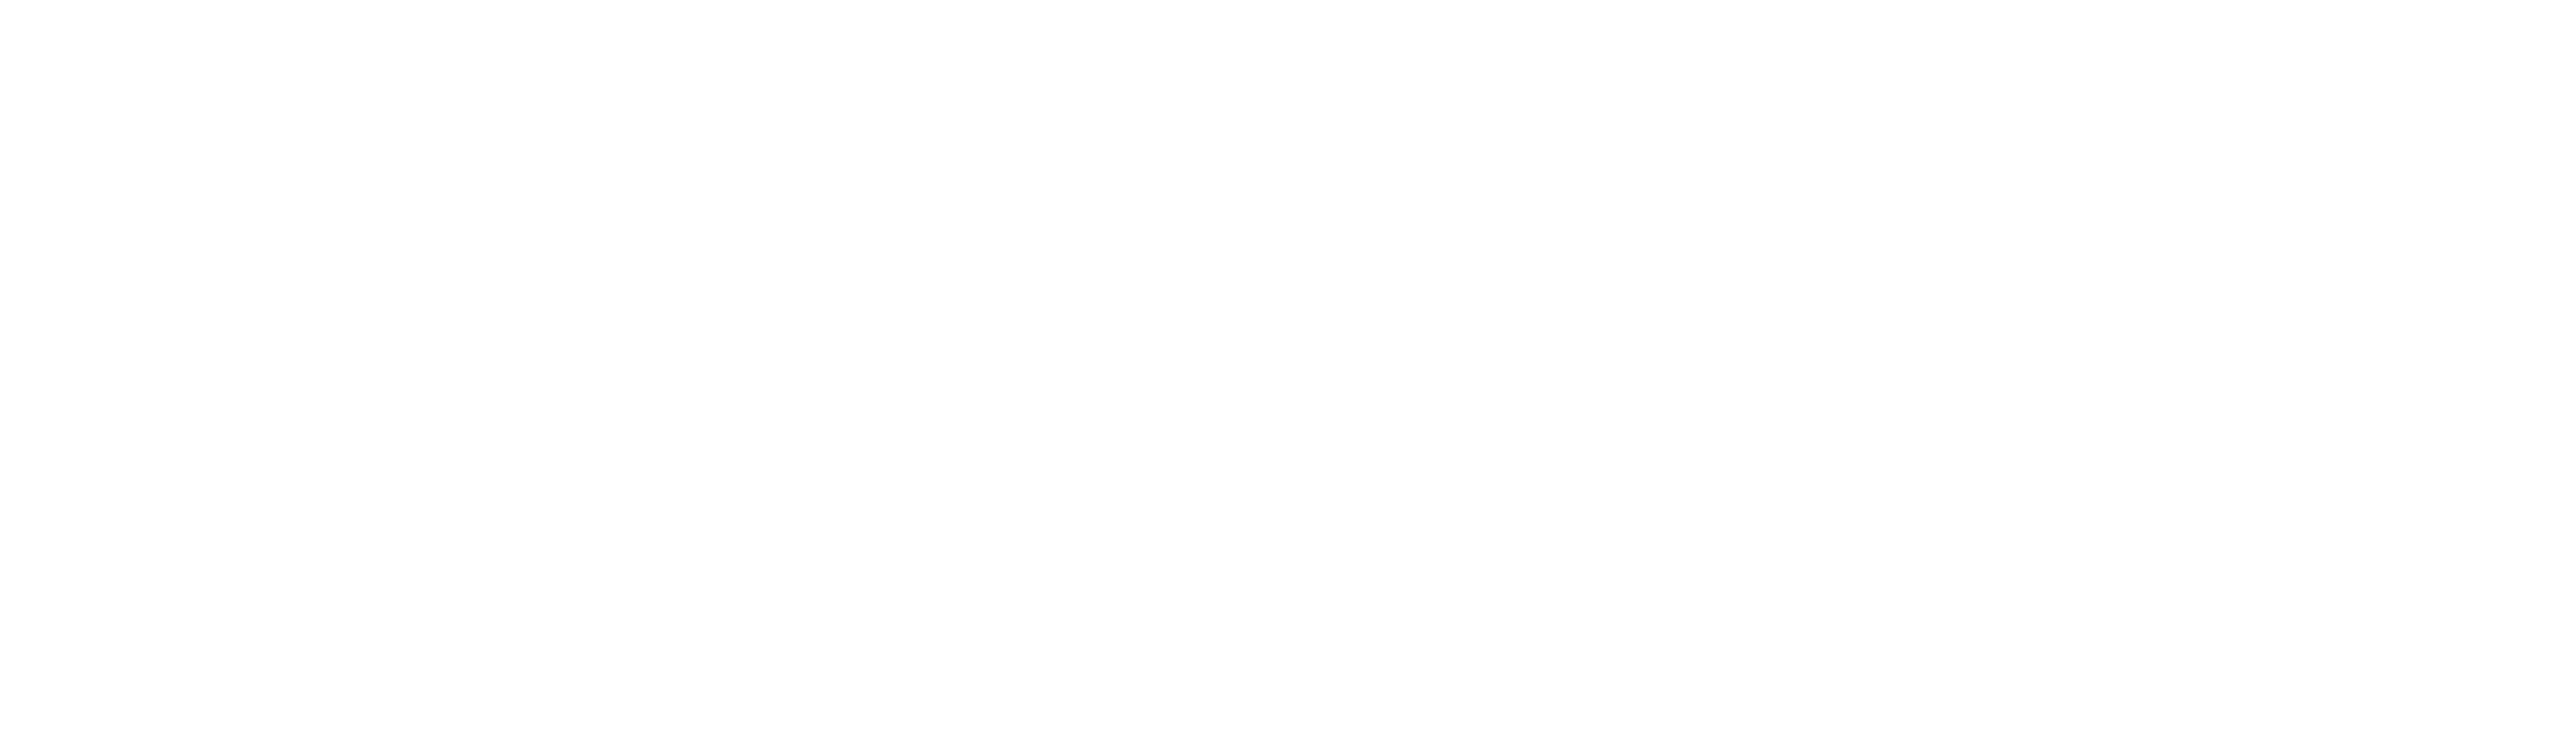 Mercy Veterinary Hospital